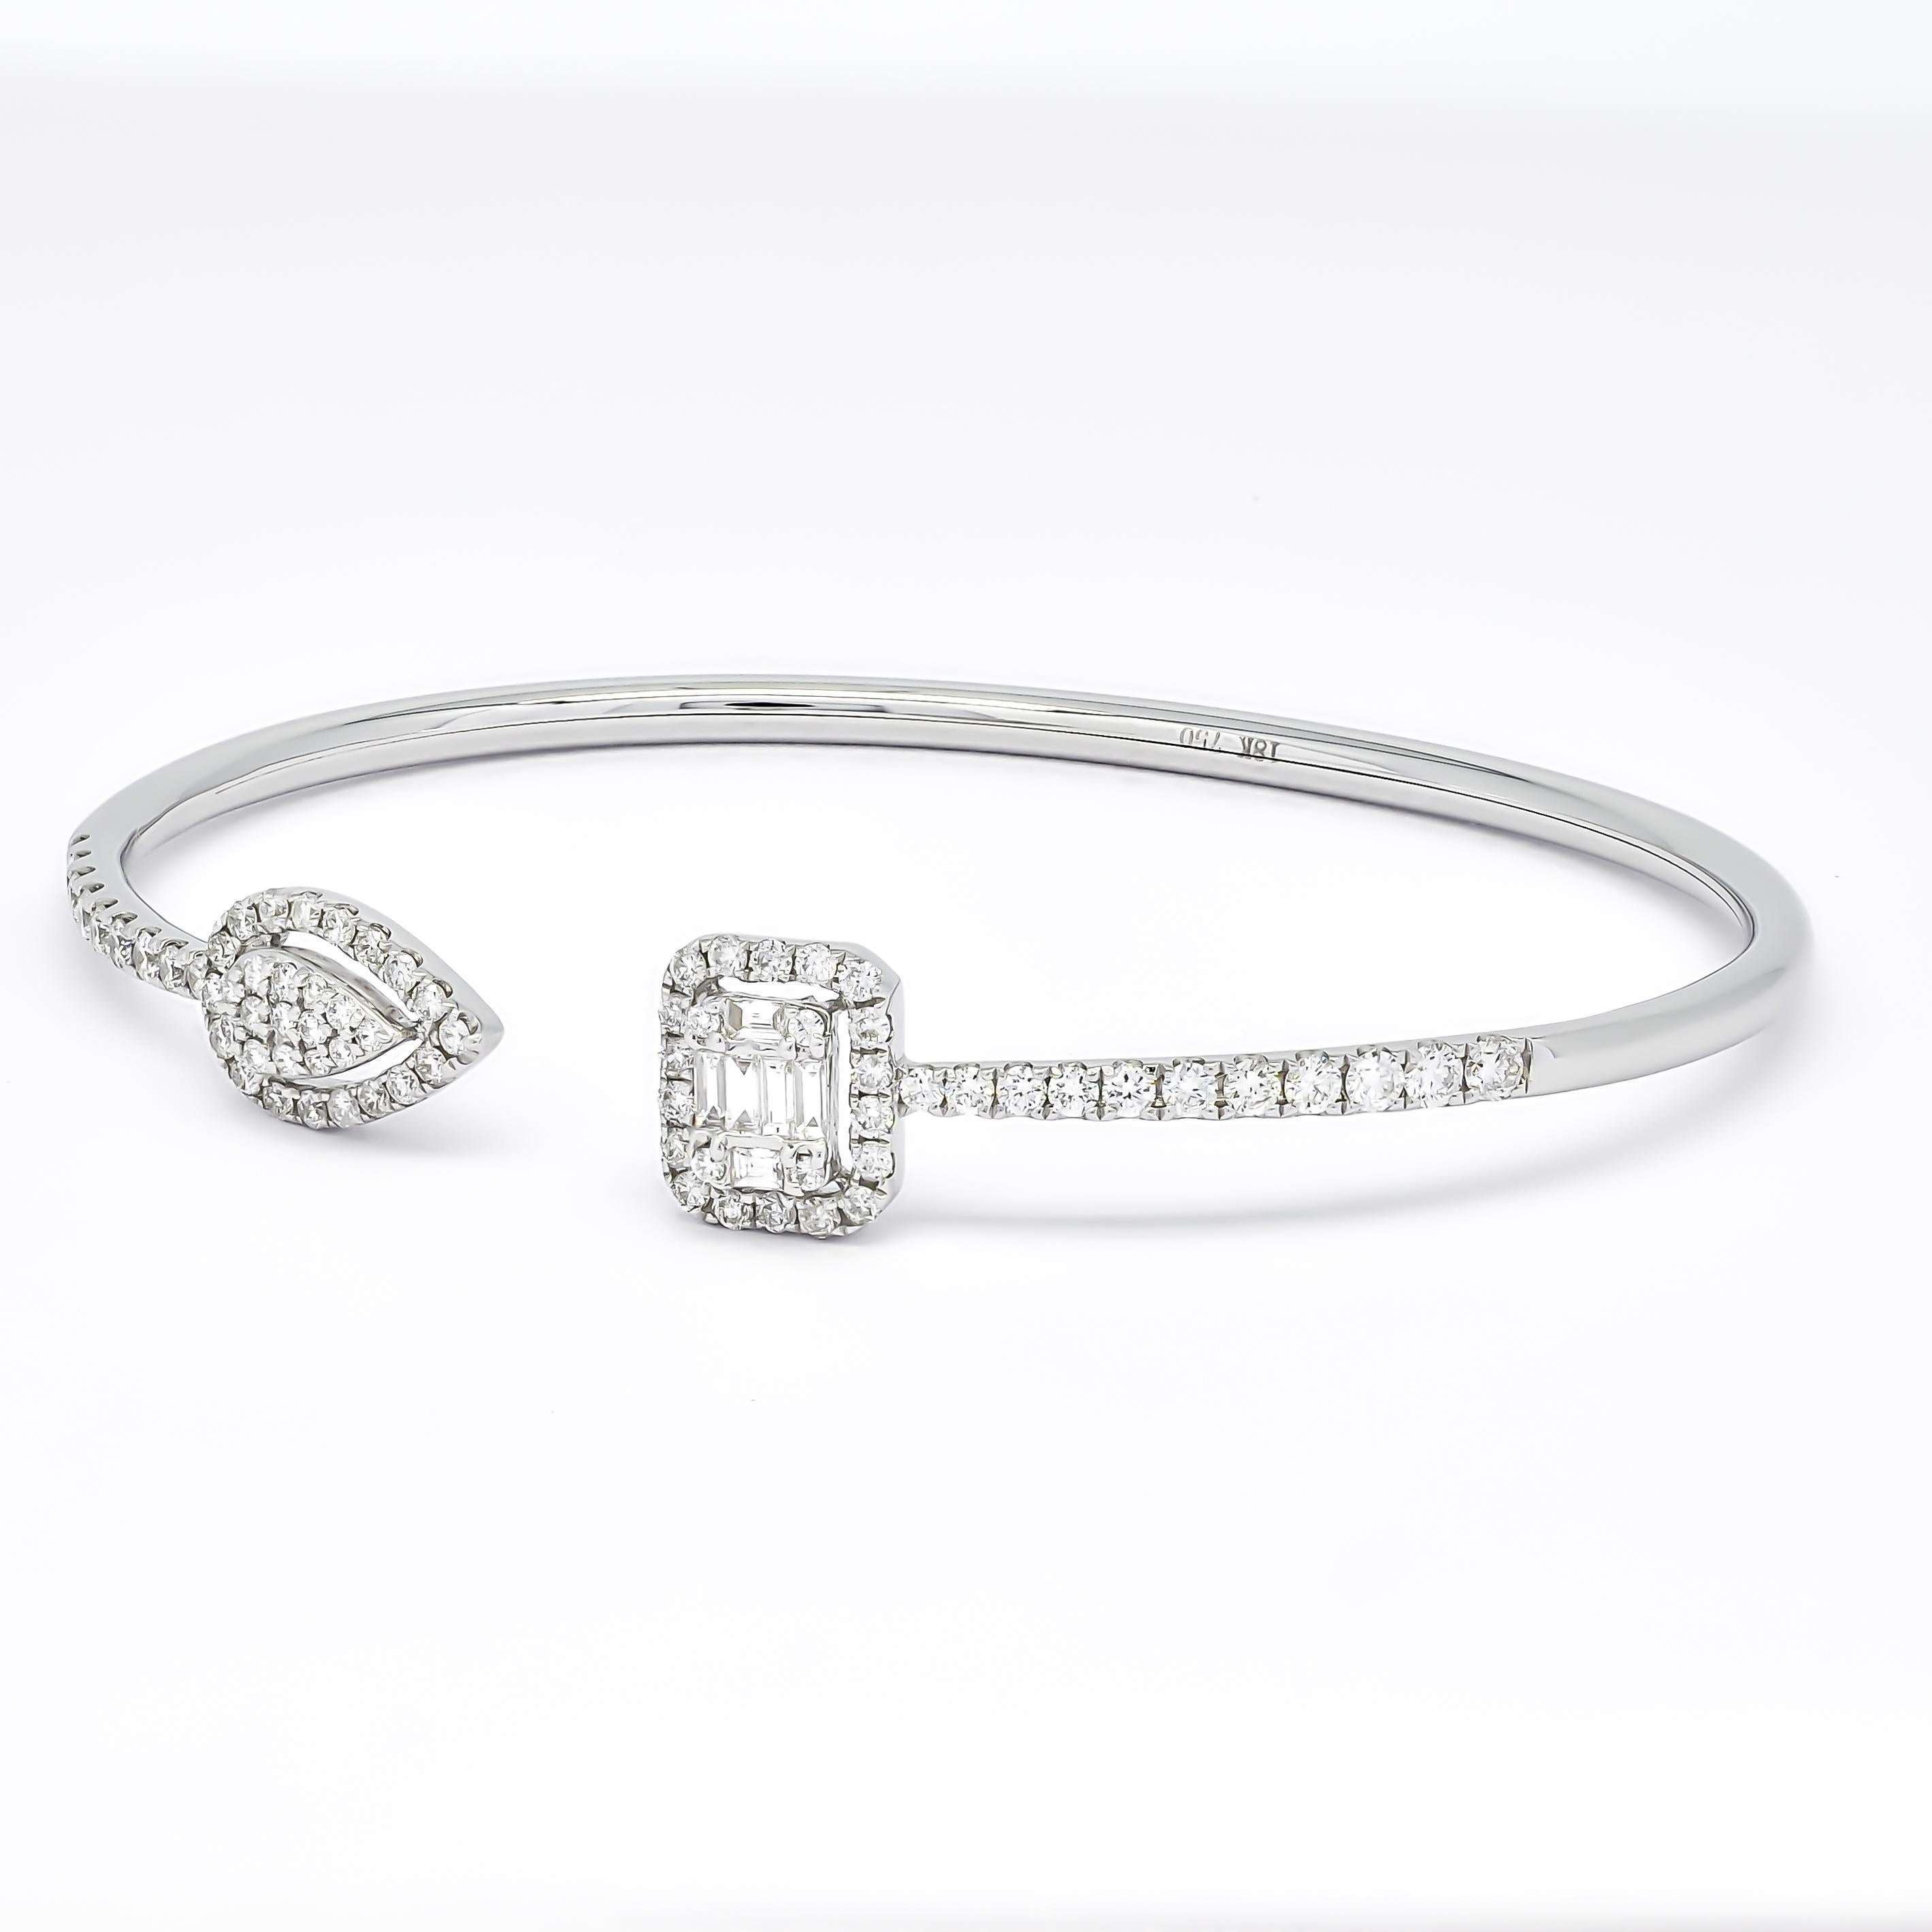 Tombez sous le charme de l'époustouflant bracelet ouvert en or 18KT Multi Shape Cluster Halo Diamond Woman Flex Cuff. Fabriqué en or luxueux 18KT, ce bracelet présente un éventail époustouflant de diamants naturels disposés dans un magnifique halo